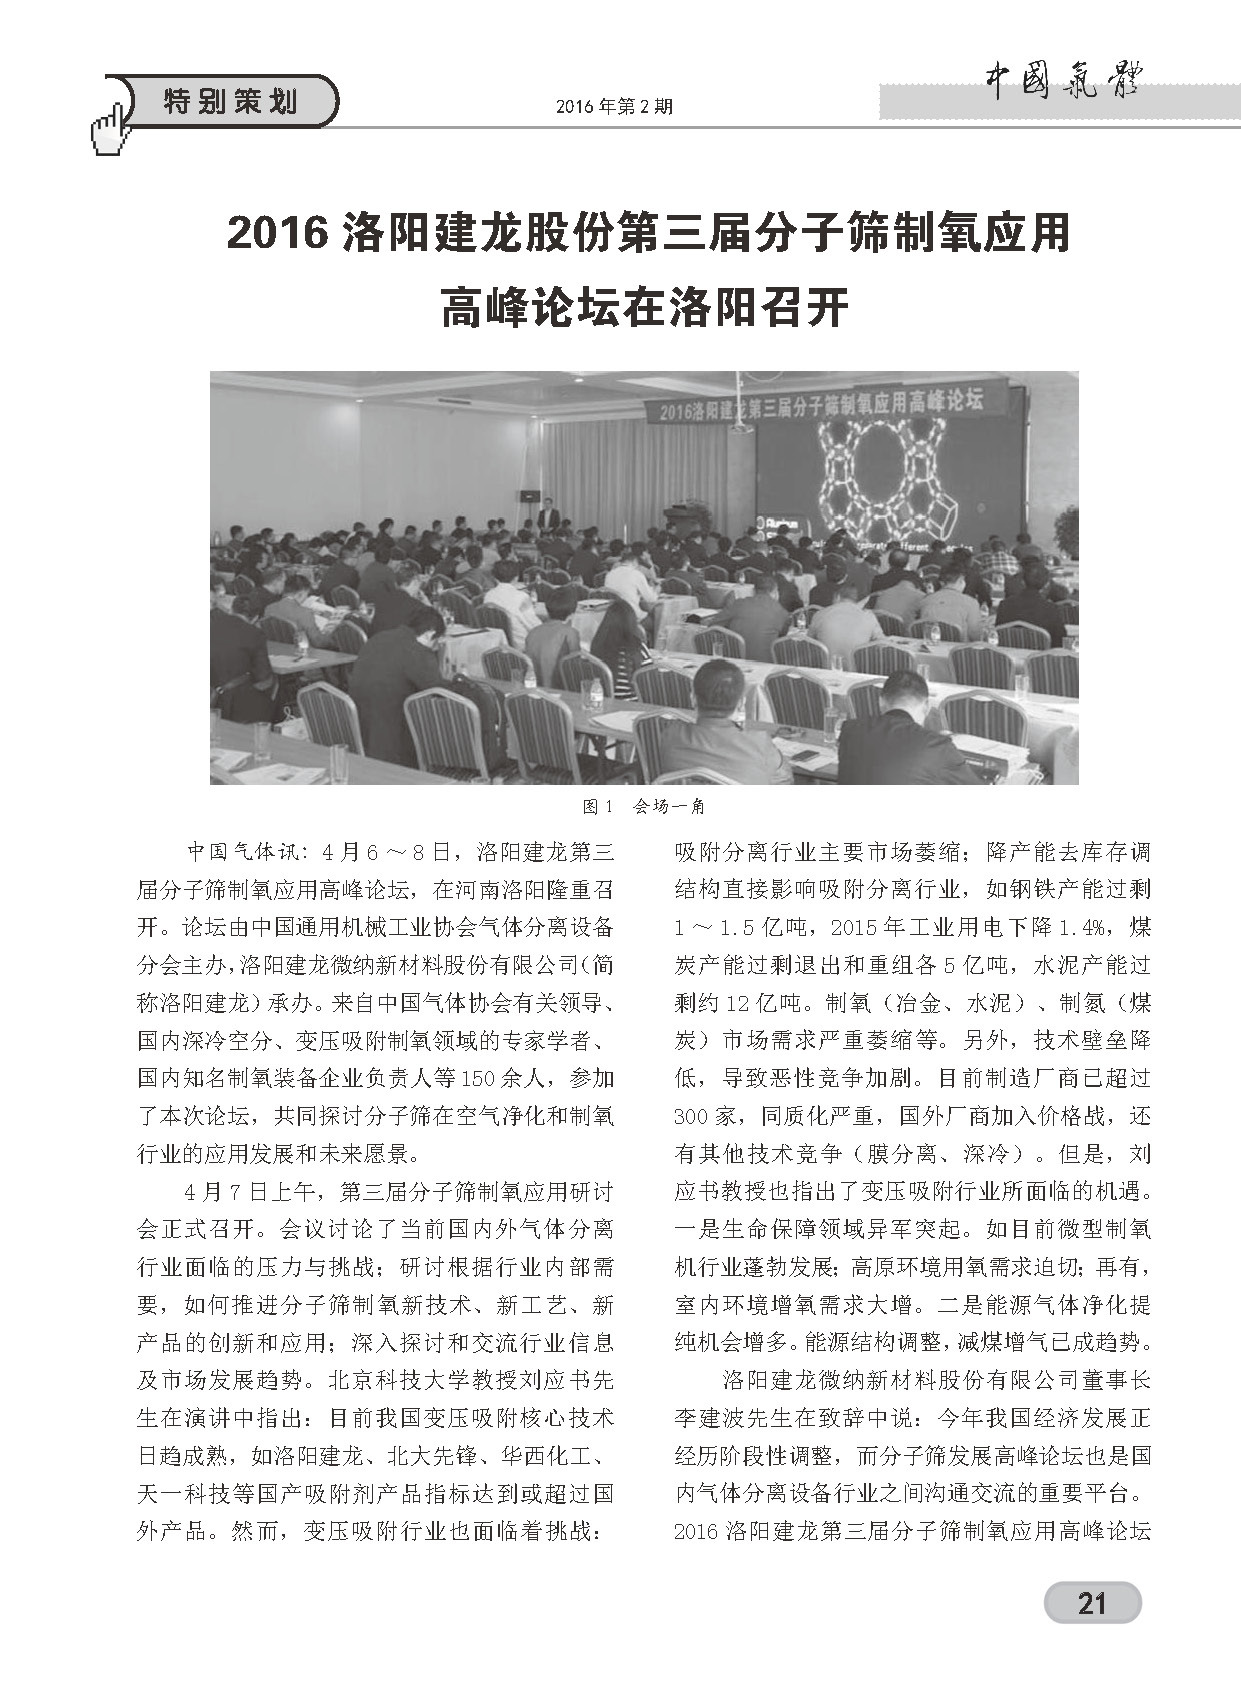 中国气体杂志第二期特别策划栏目对洛阳建龙第三届分子筛制氧应用论坛进行报道